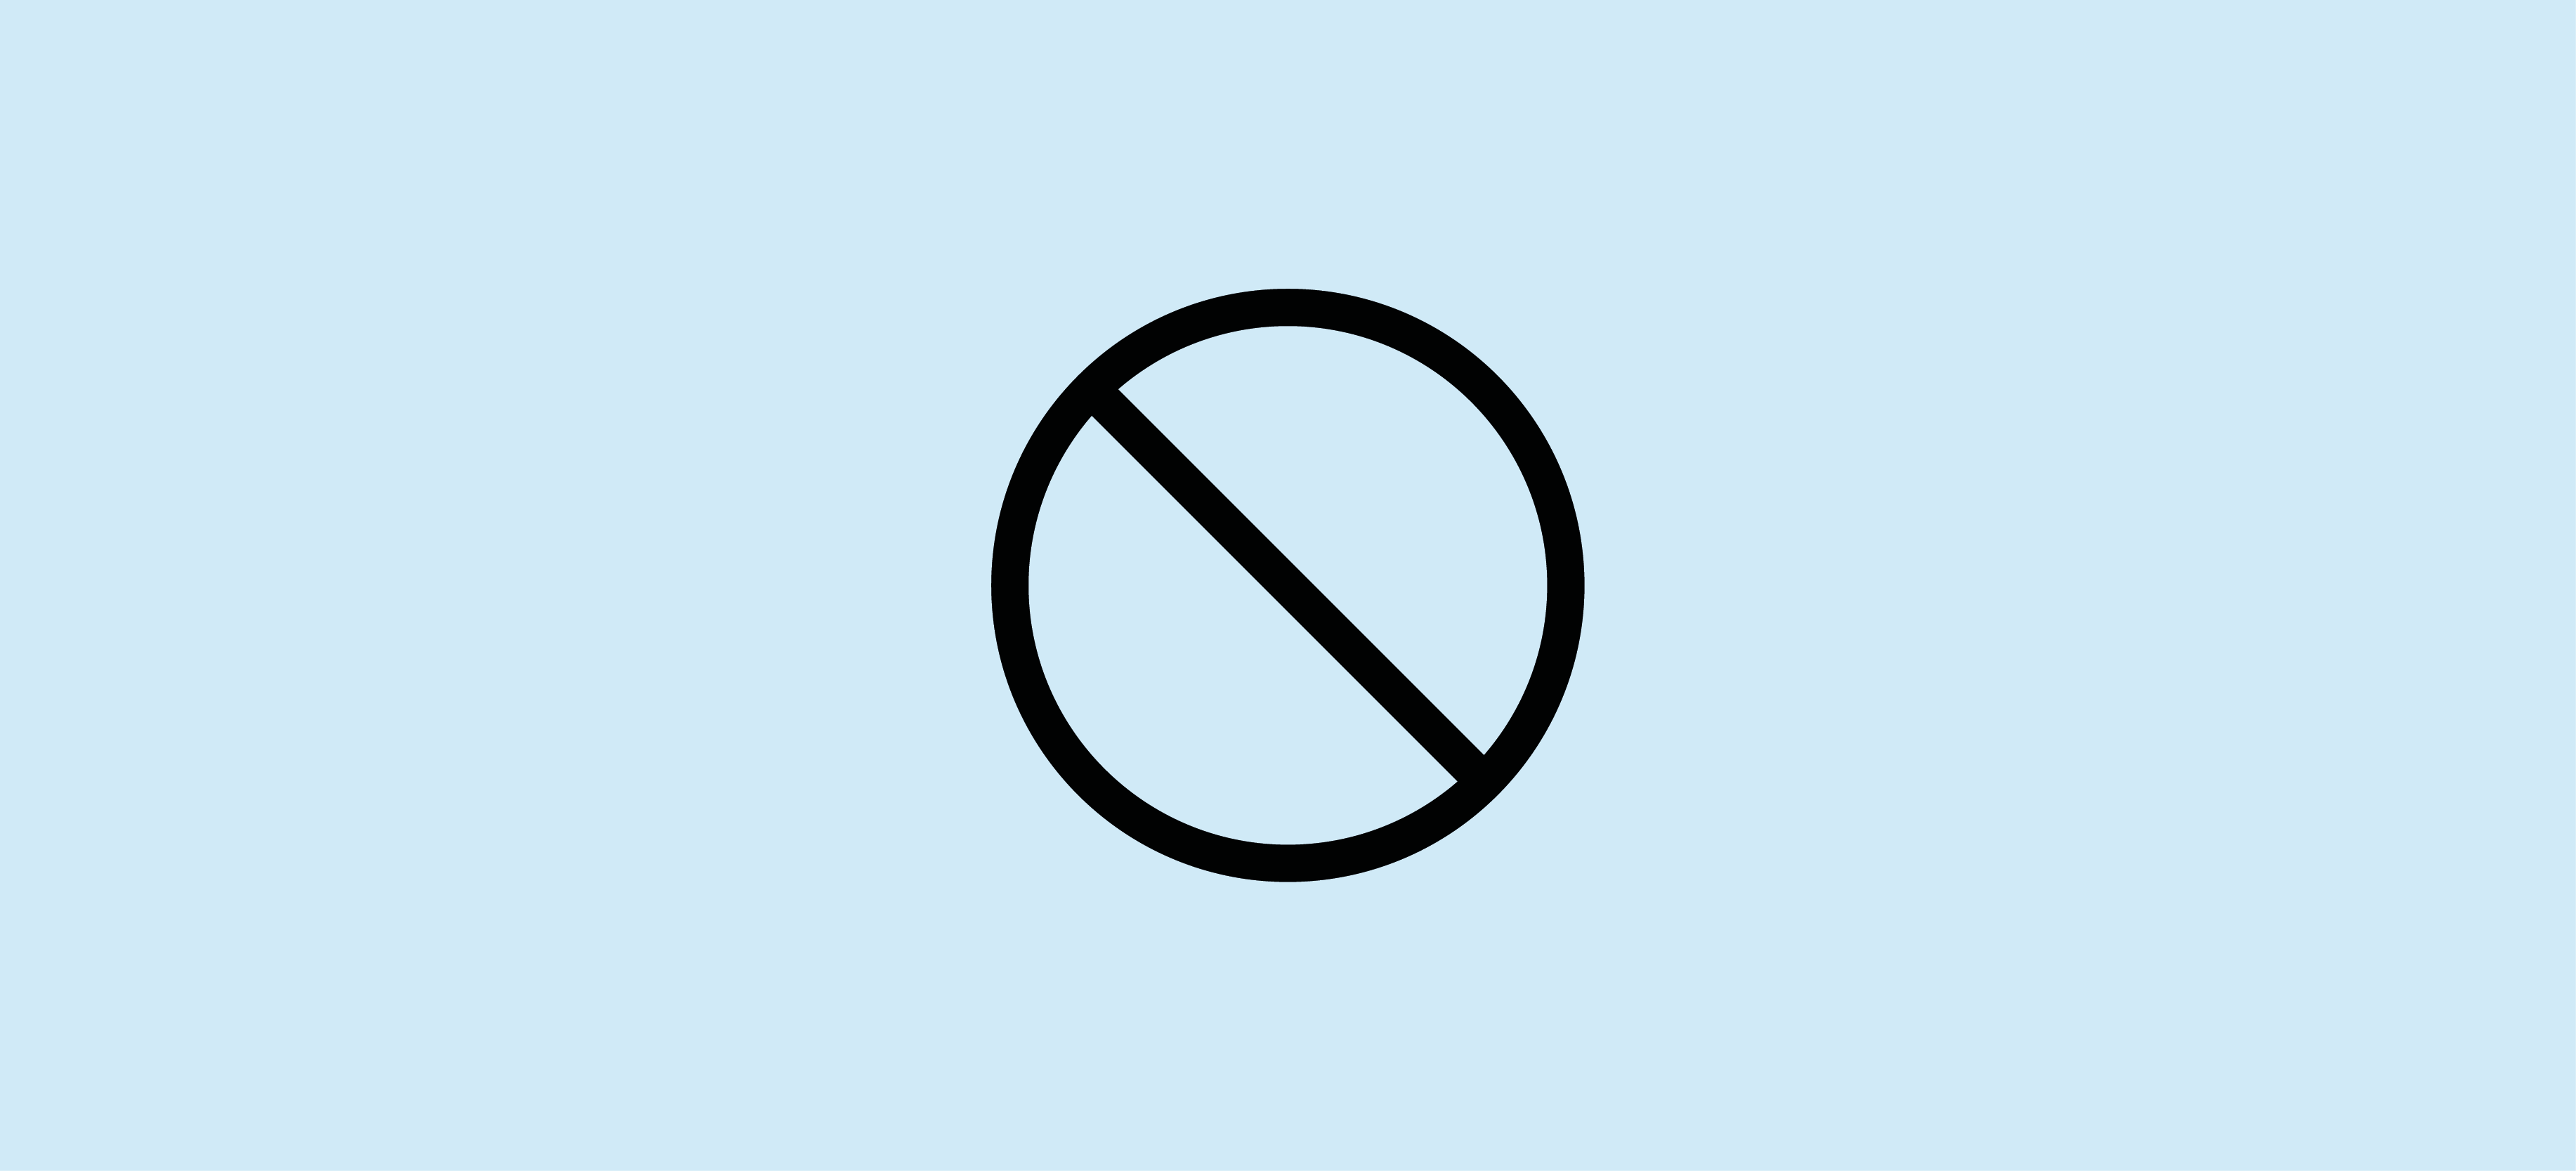 Svart grafisk ikon. Cirkel korsad av tvärslagen linje (förbud). Ljusblå bakgrund.